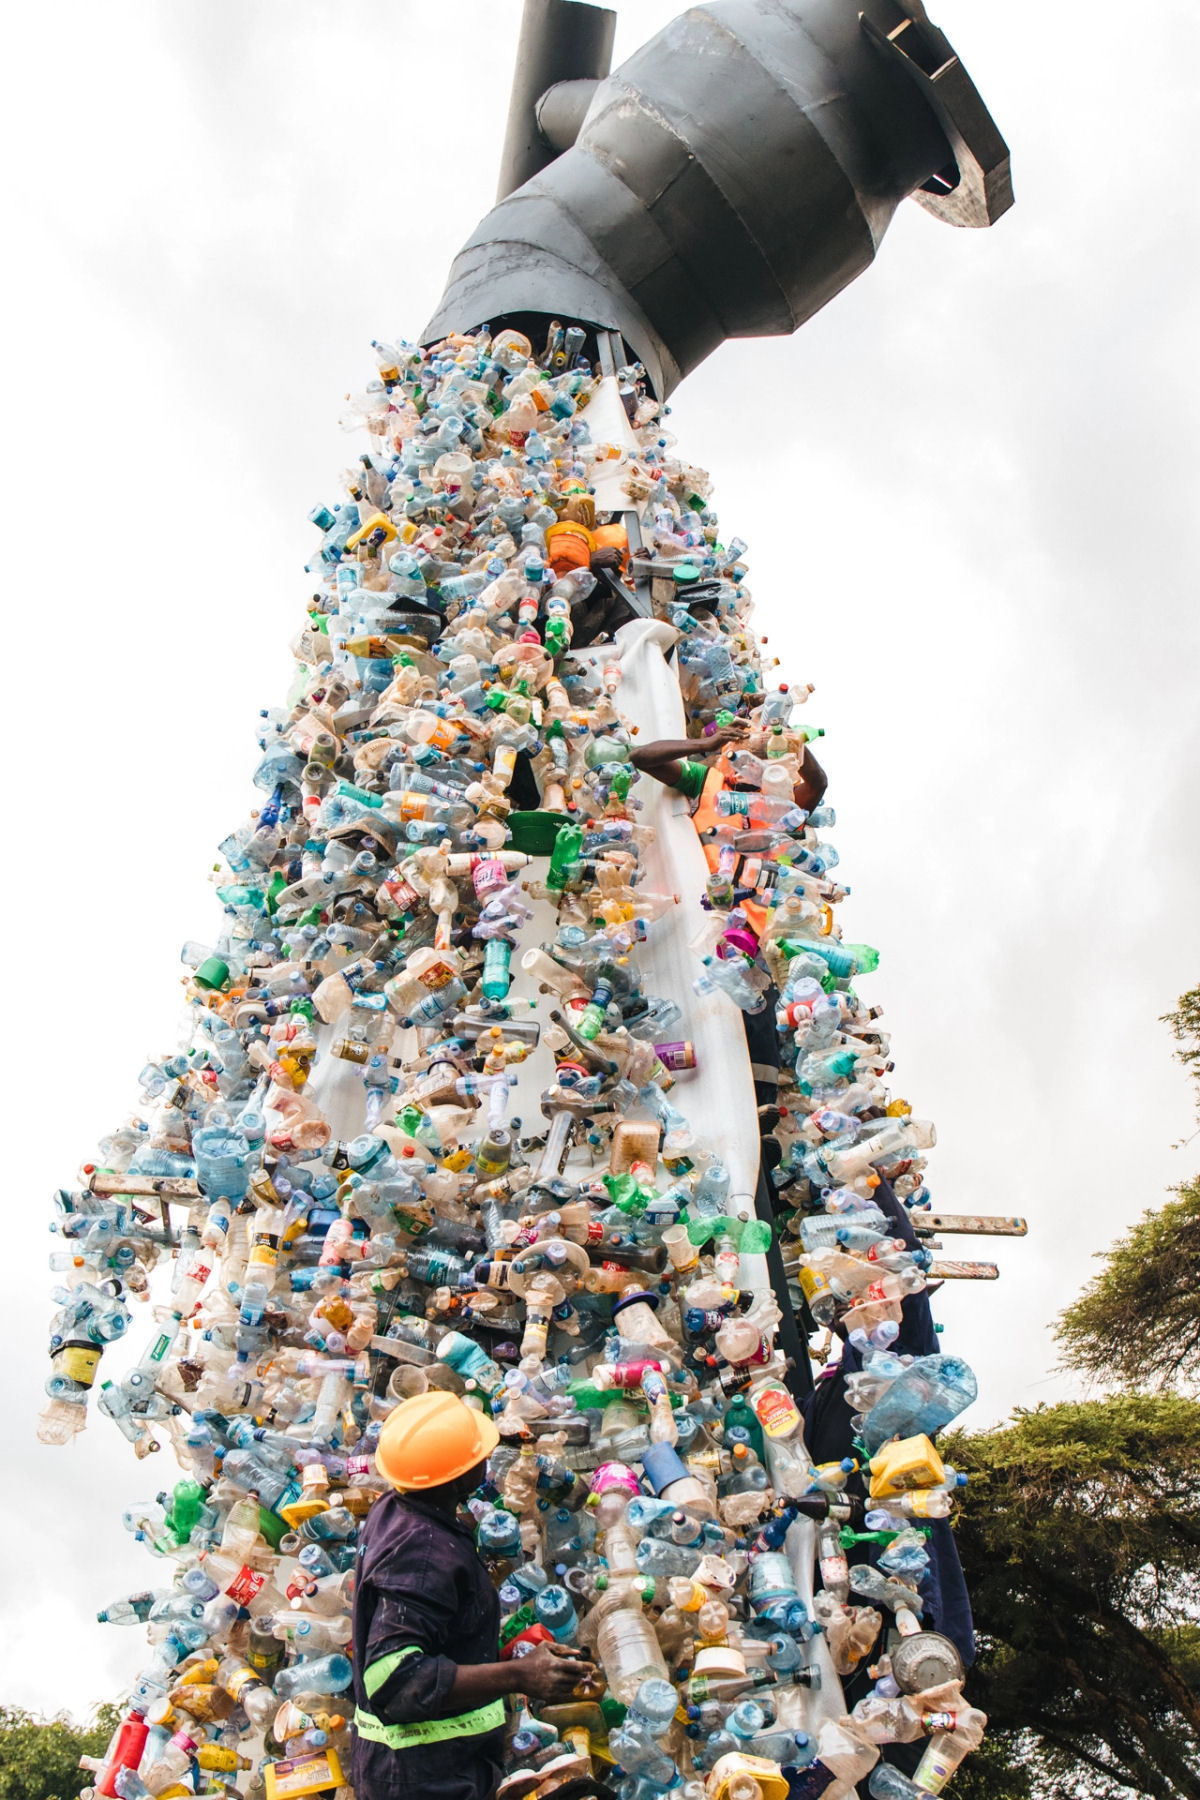 'Desligue a torneira de plástico': 3 toneladas de resíduos derramam de uma torneira flutuante